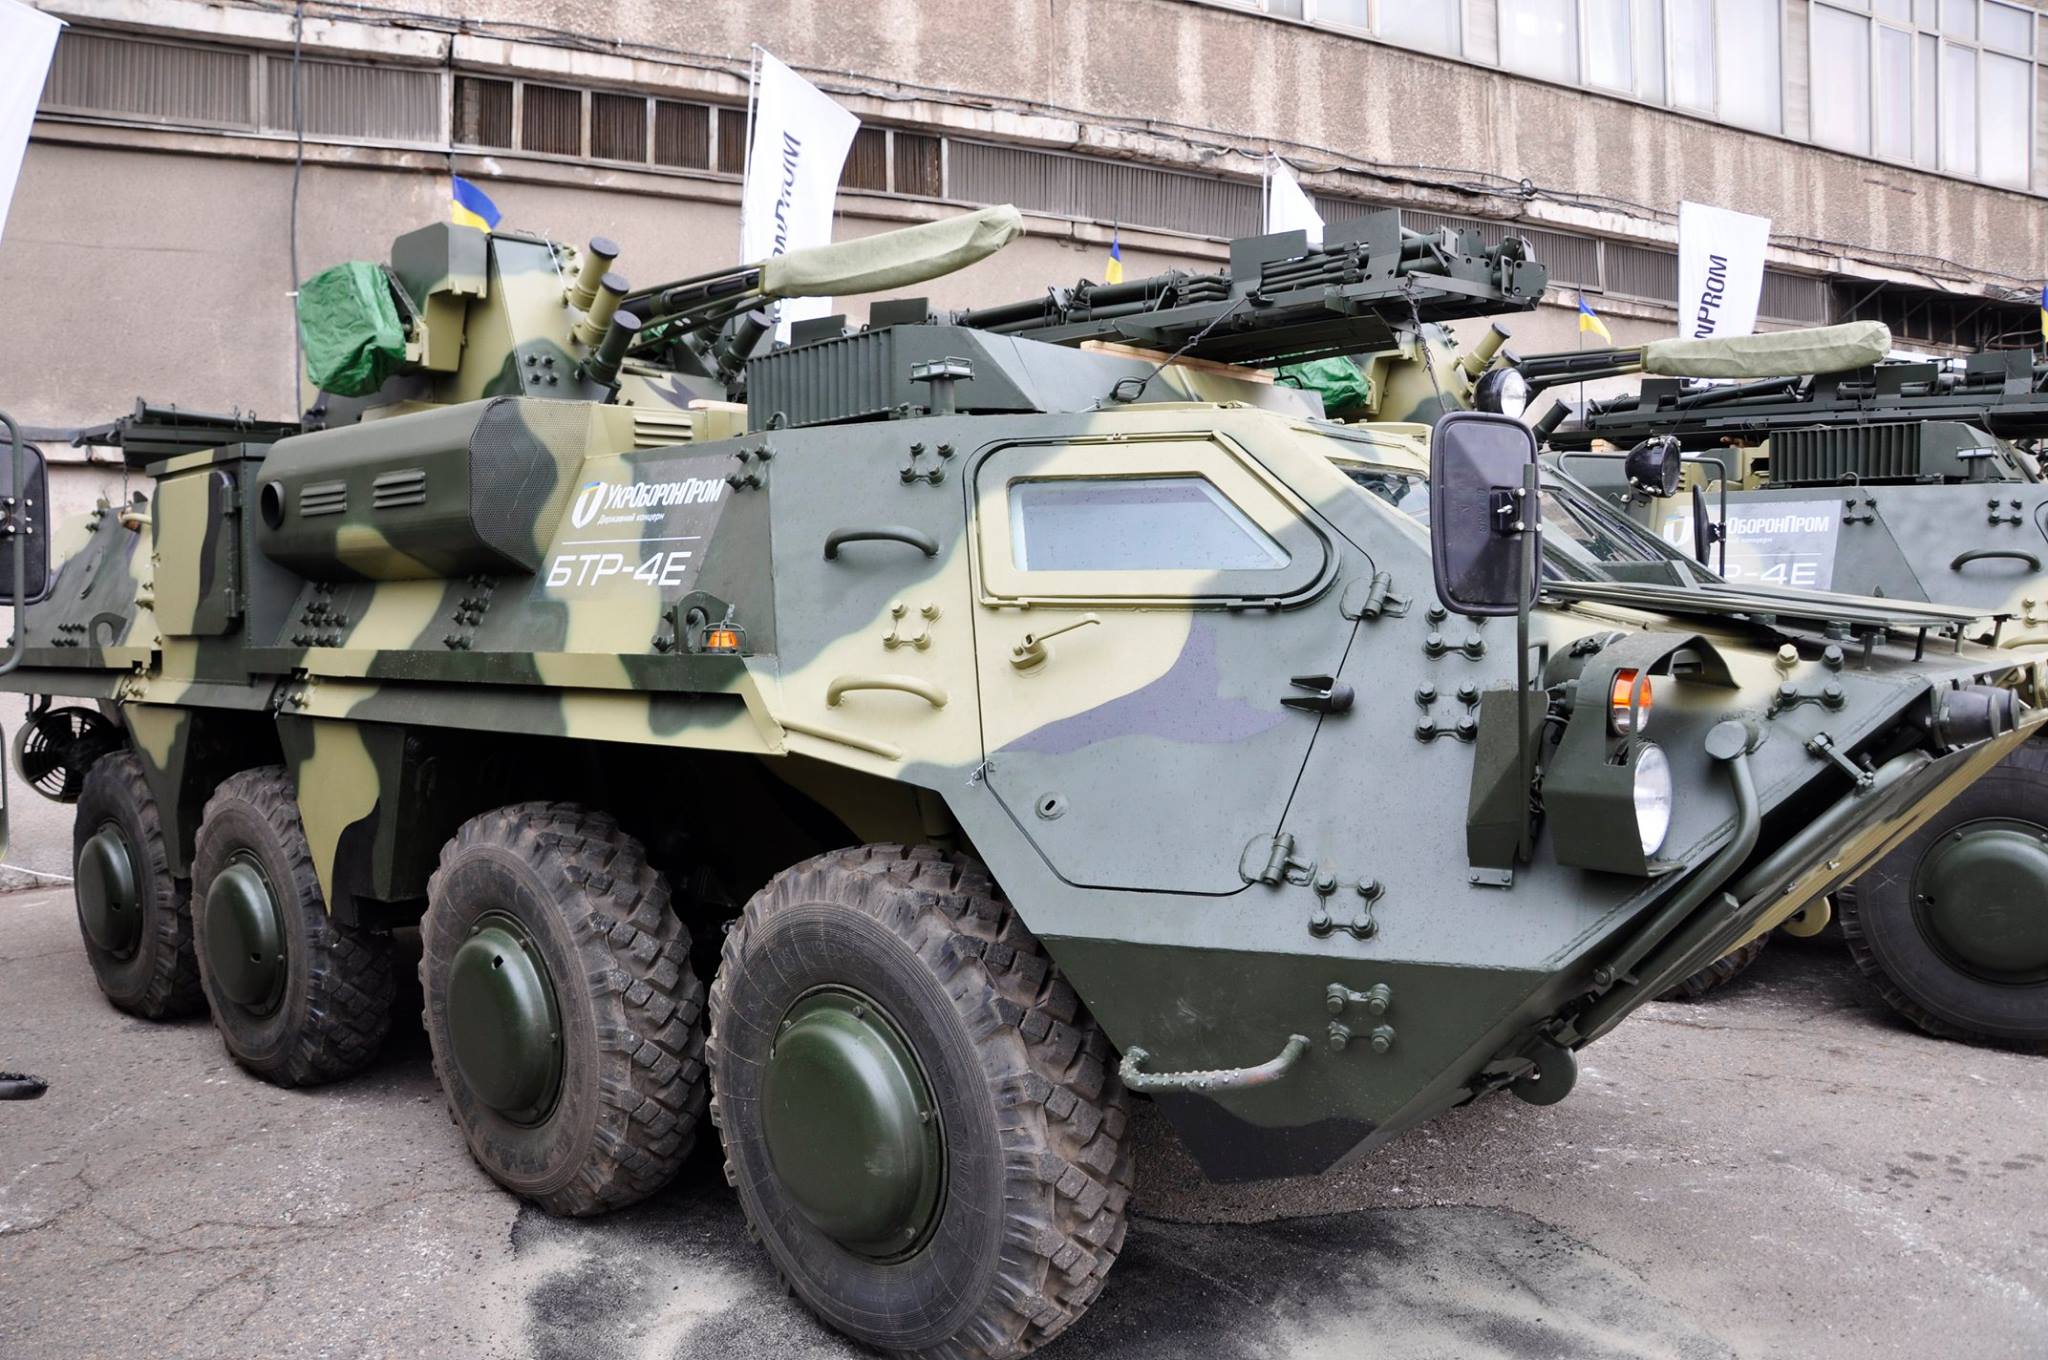 Мощь украинских бронетранспортеров БТР-4 хотят испытать во всем мире: одна из азиатских стран решила закупить у Киева вооружение для своей армии 